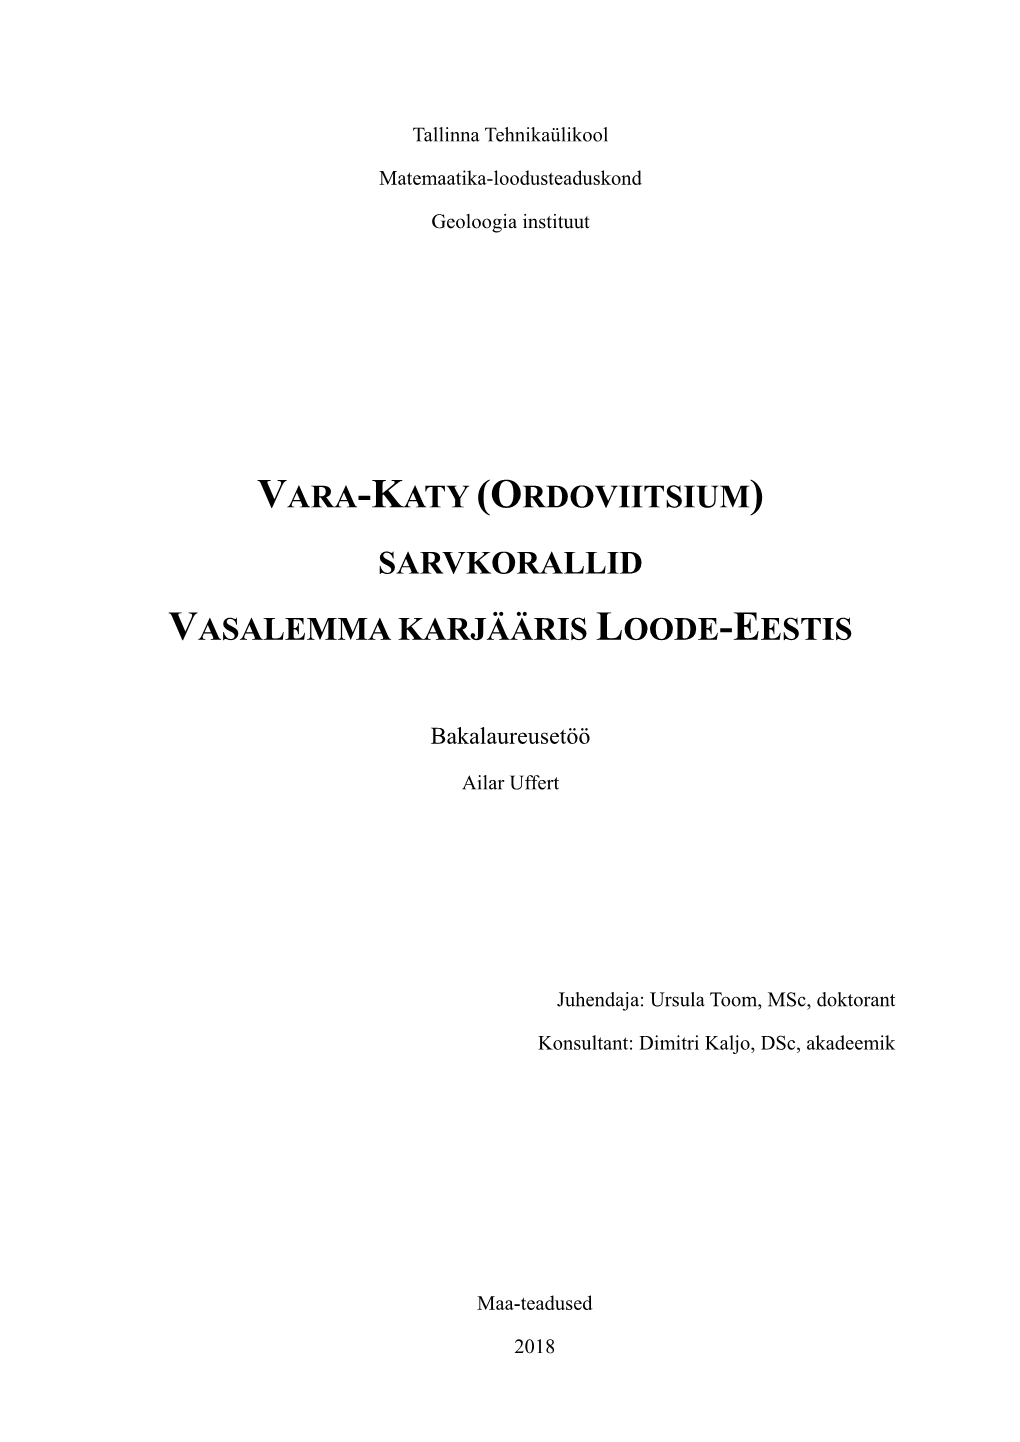 Vara-Katy (Ordoviitsium) Sarvkorallid Vasalemma Karjääris Loode-Eestis